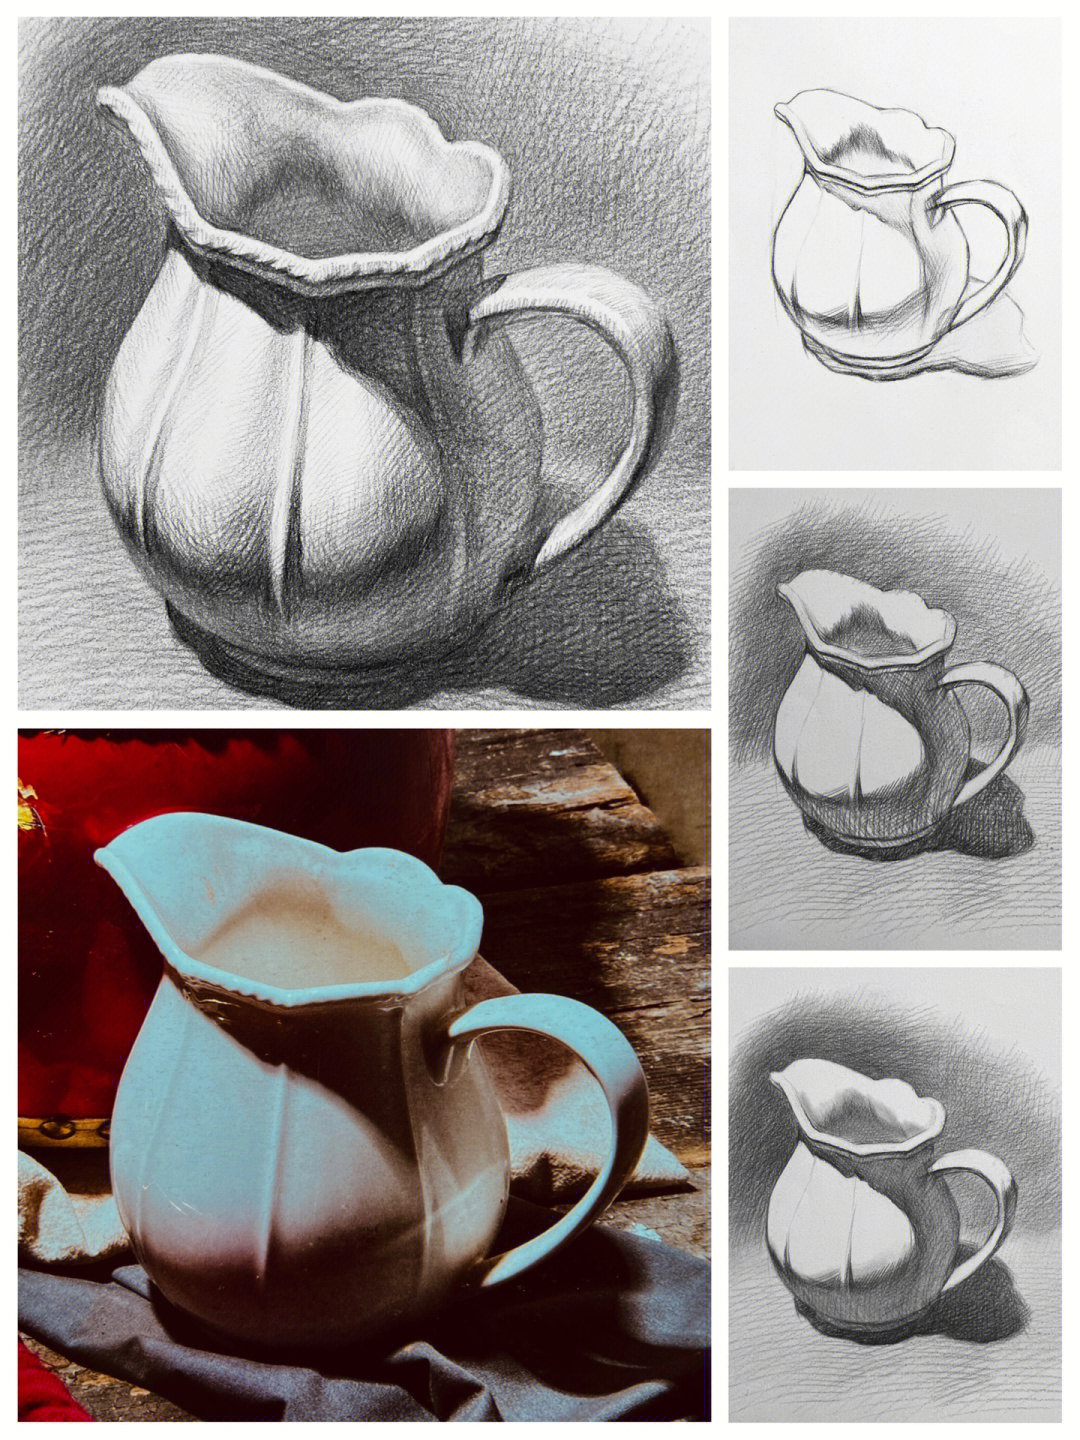 陶瓷茶壶素描图片大全图片